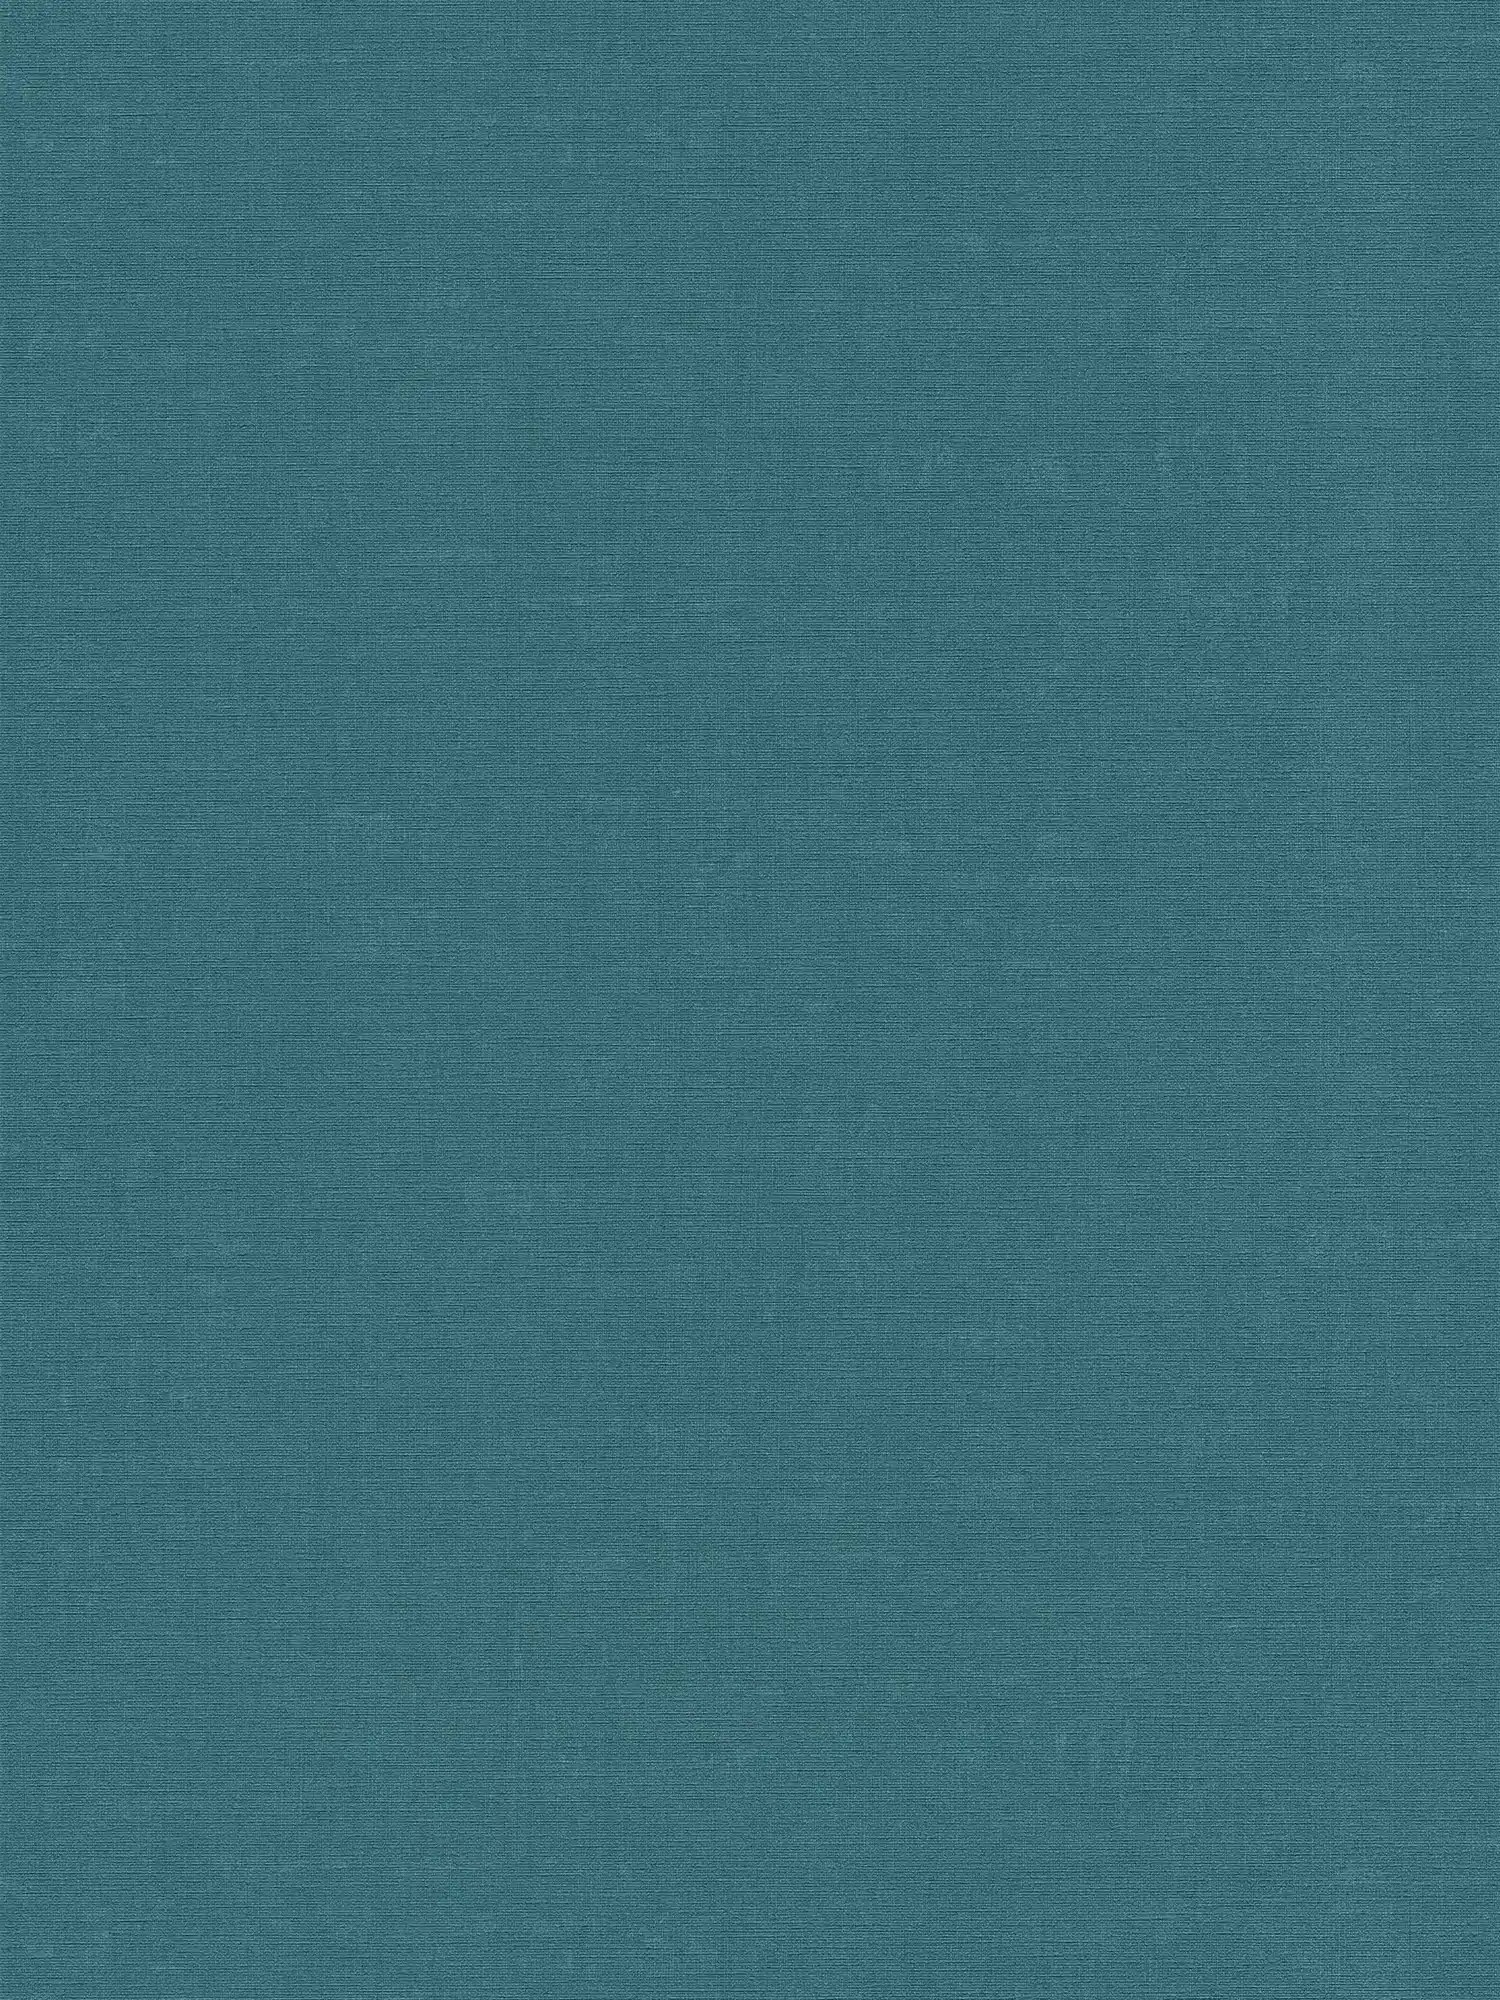 Carta da parati in tessuto non tessuto a tinta unita con effetto screziato - blu, verde
